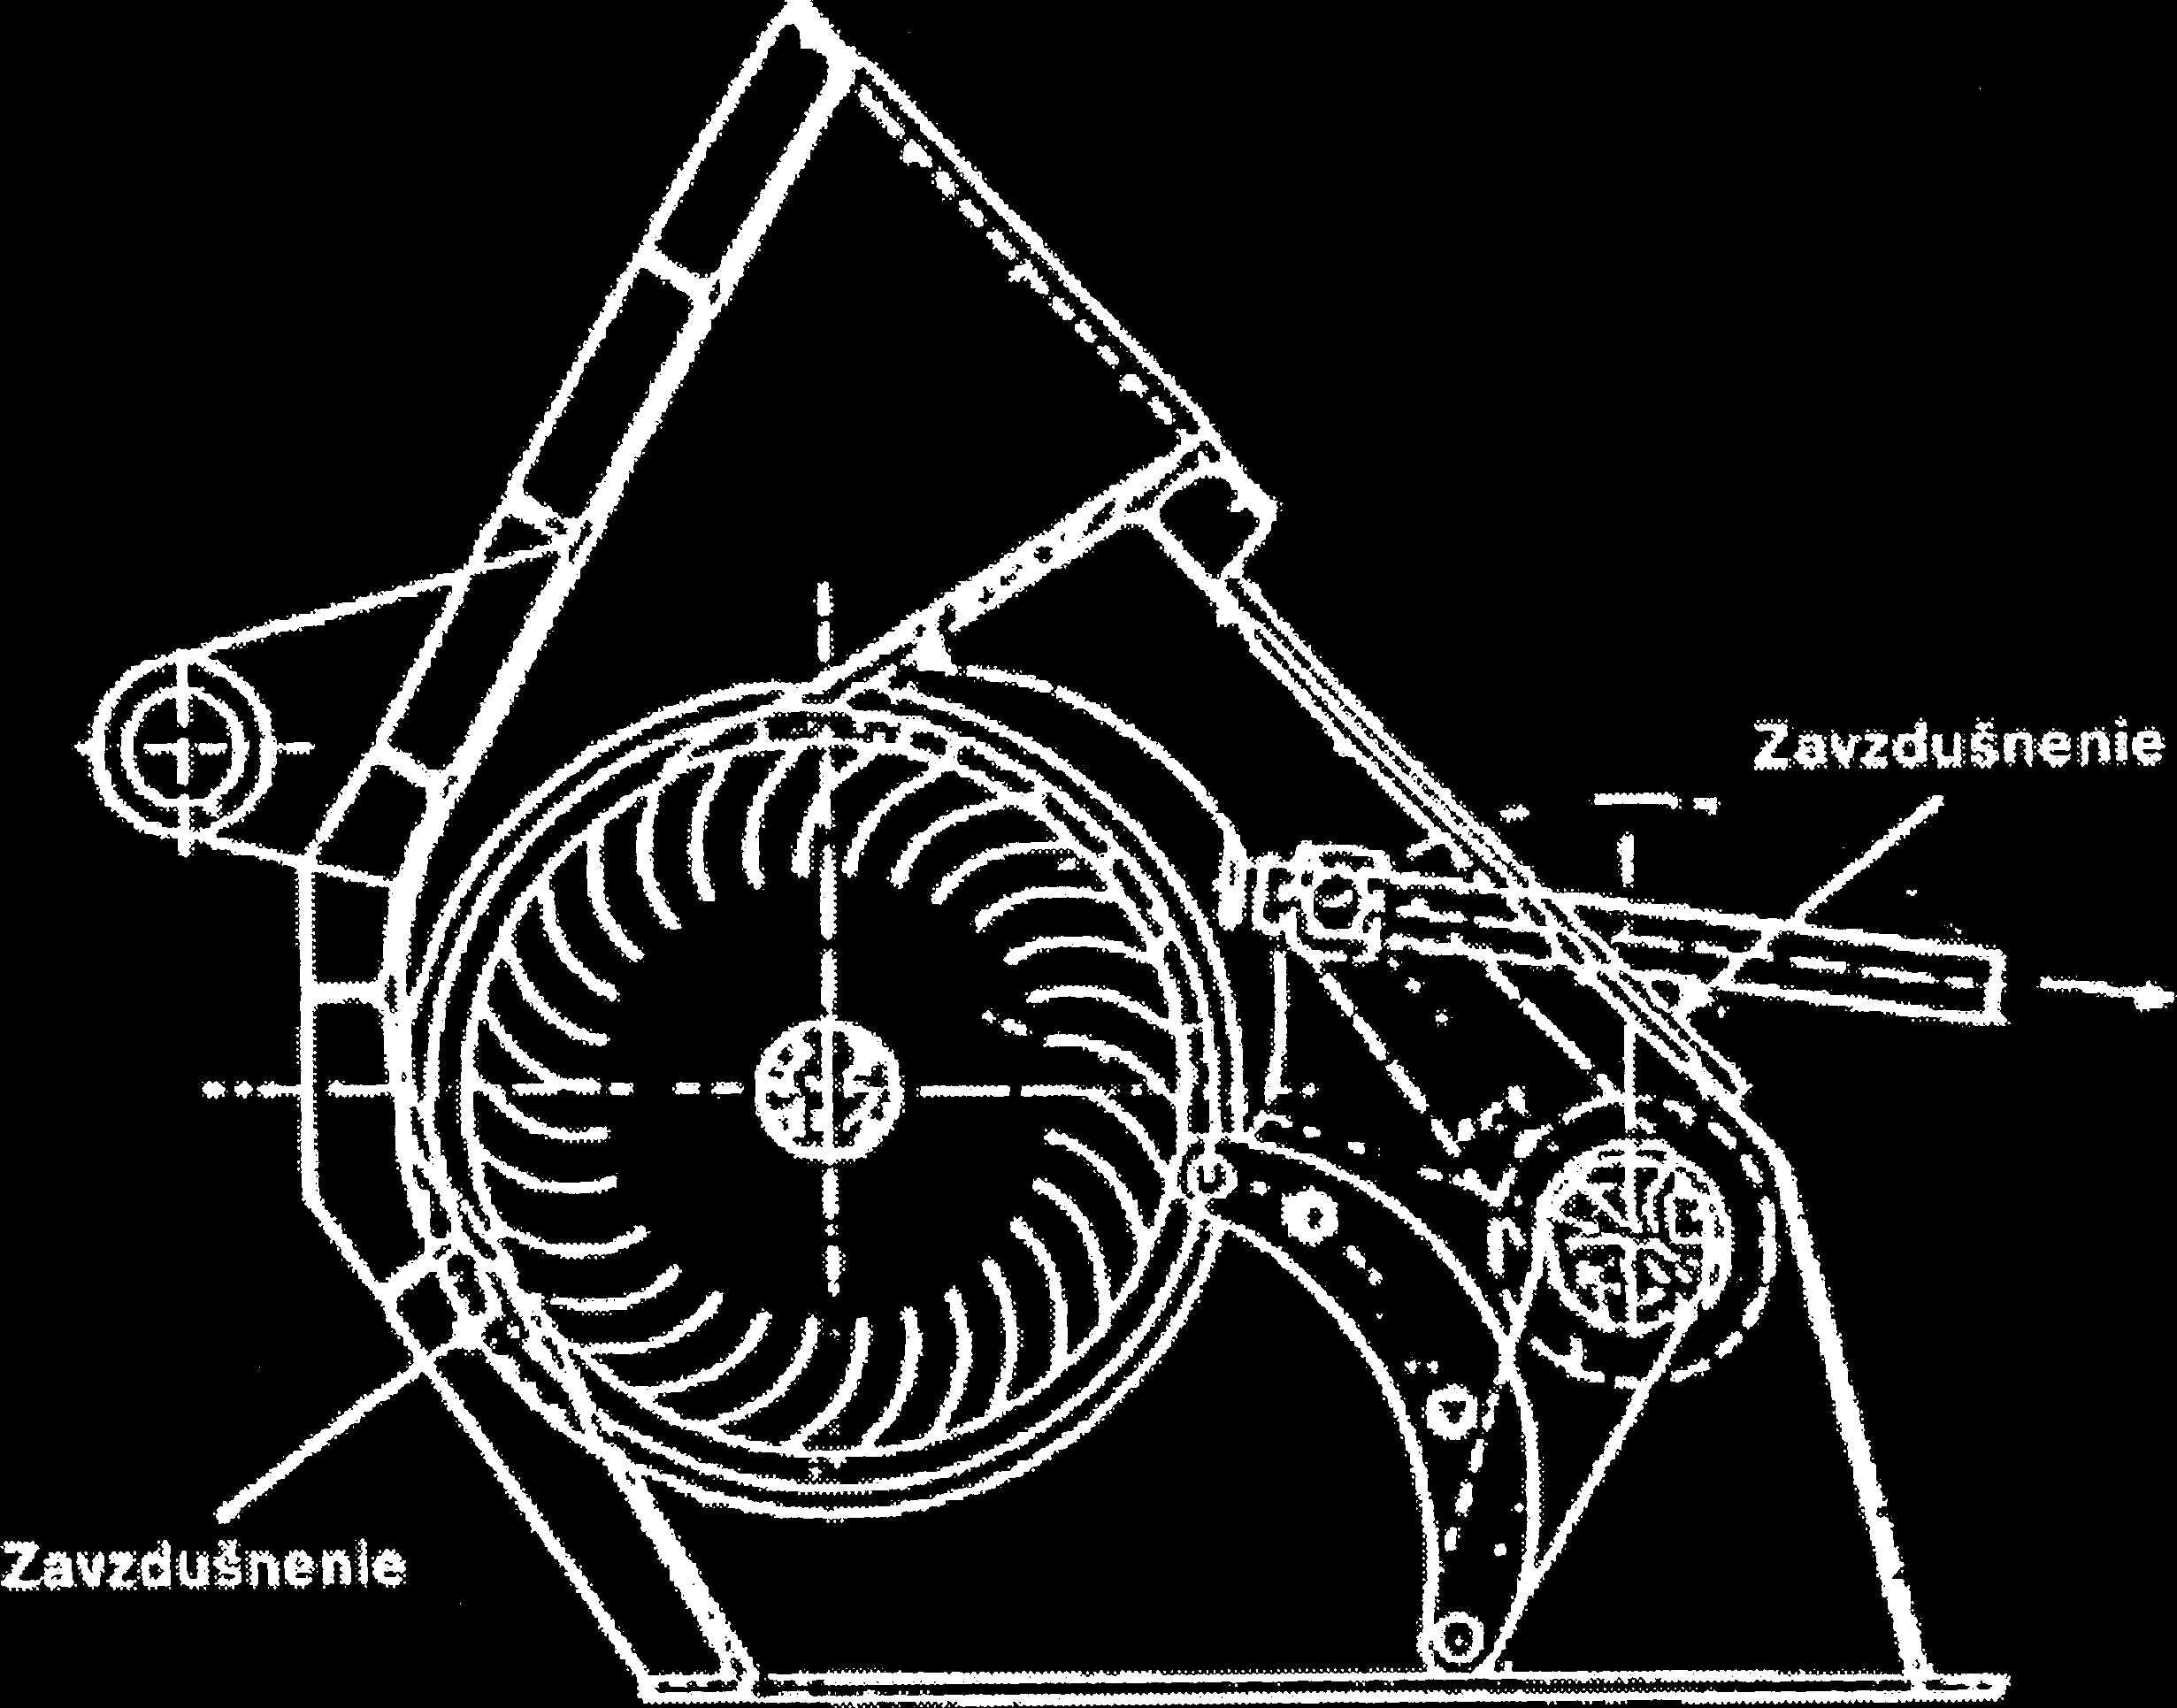 Bankiho turbína Hoci konštrukciu turbíny, ktorá sa dnes označuje ako Banki, ako prvý navrhol a patentoval v roku 1903 inžinier Michell, dostala názov po maoarskom profesorovi Donatovi Bankim, ktorý